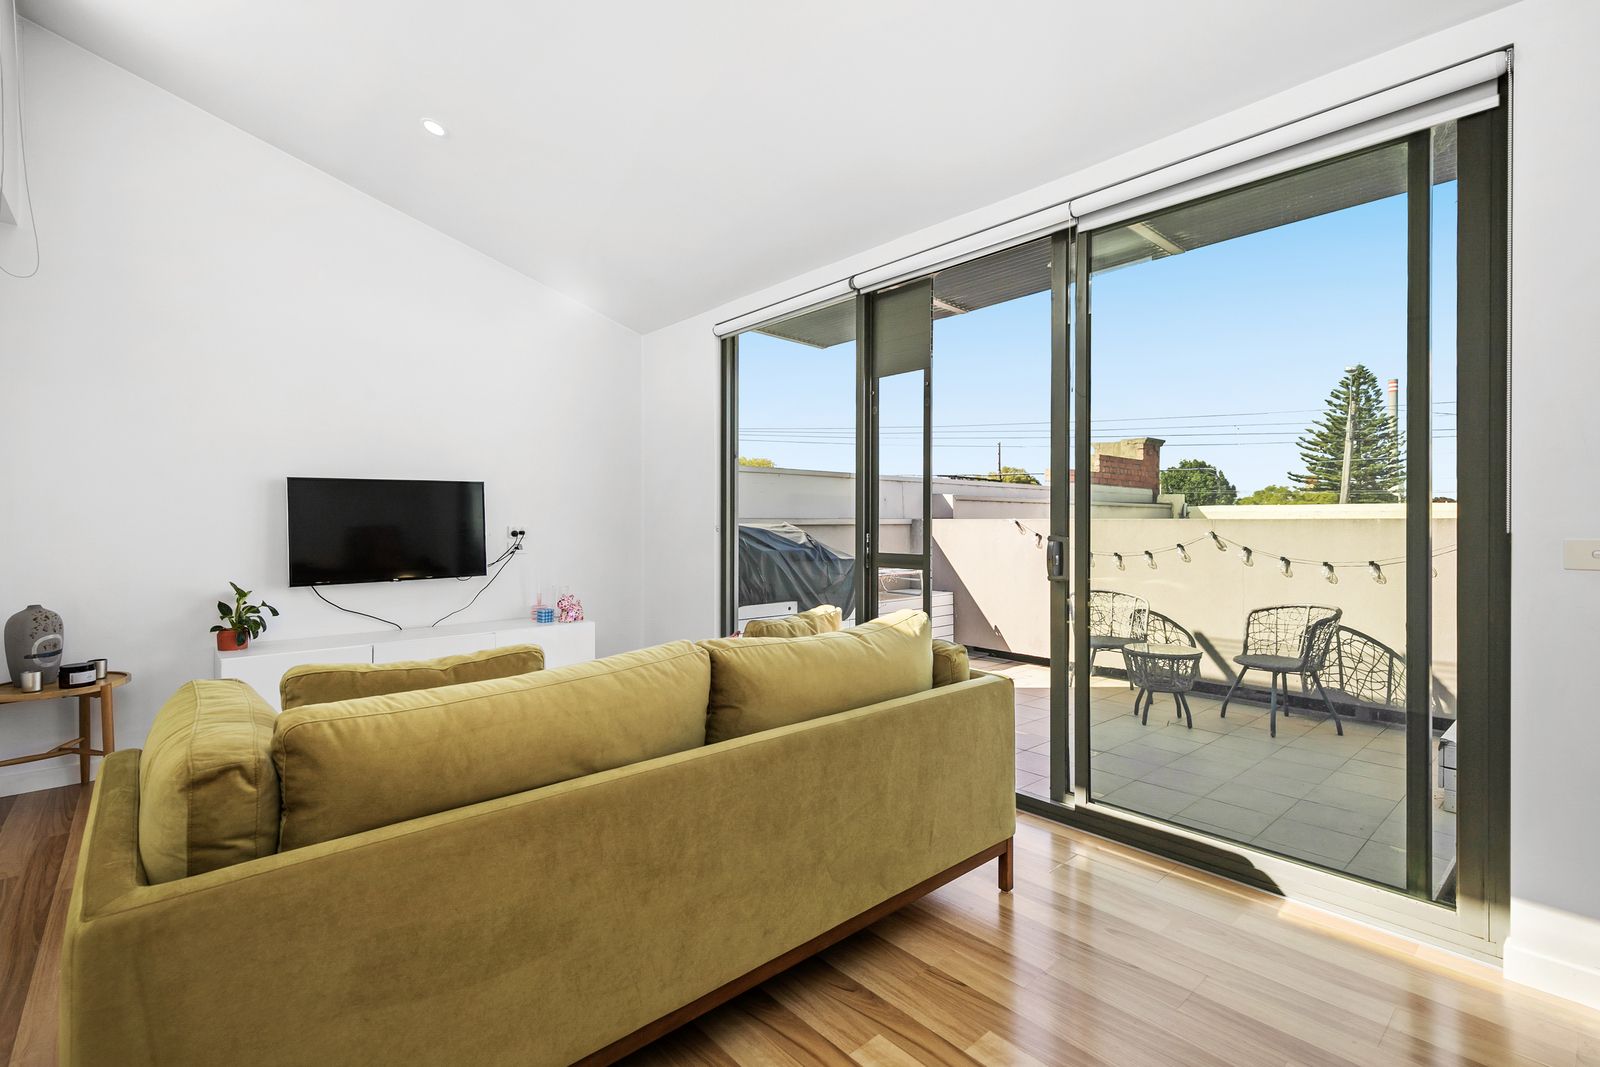 2 bedrooms Apartment / Unit / Flat in 1/421 Melbourne Road NEWPORT VIC, 3015